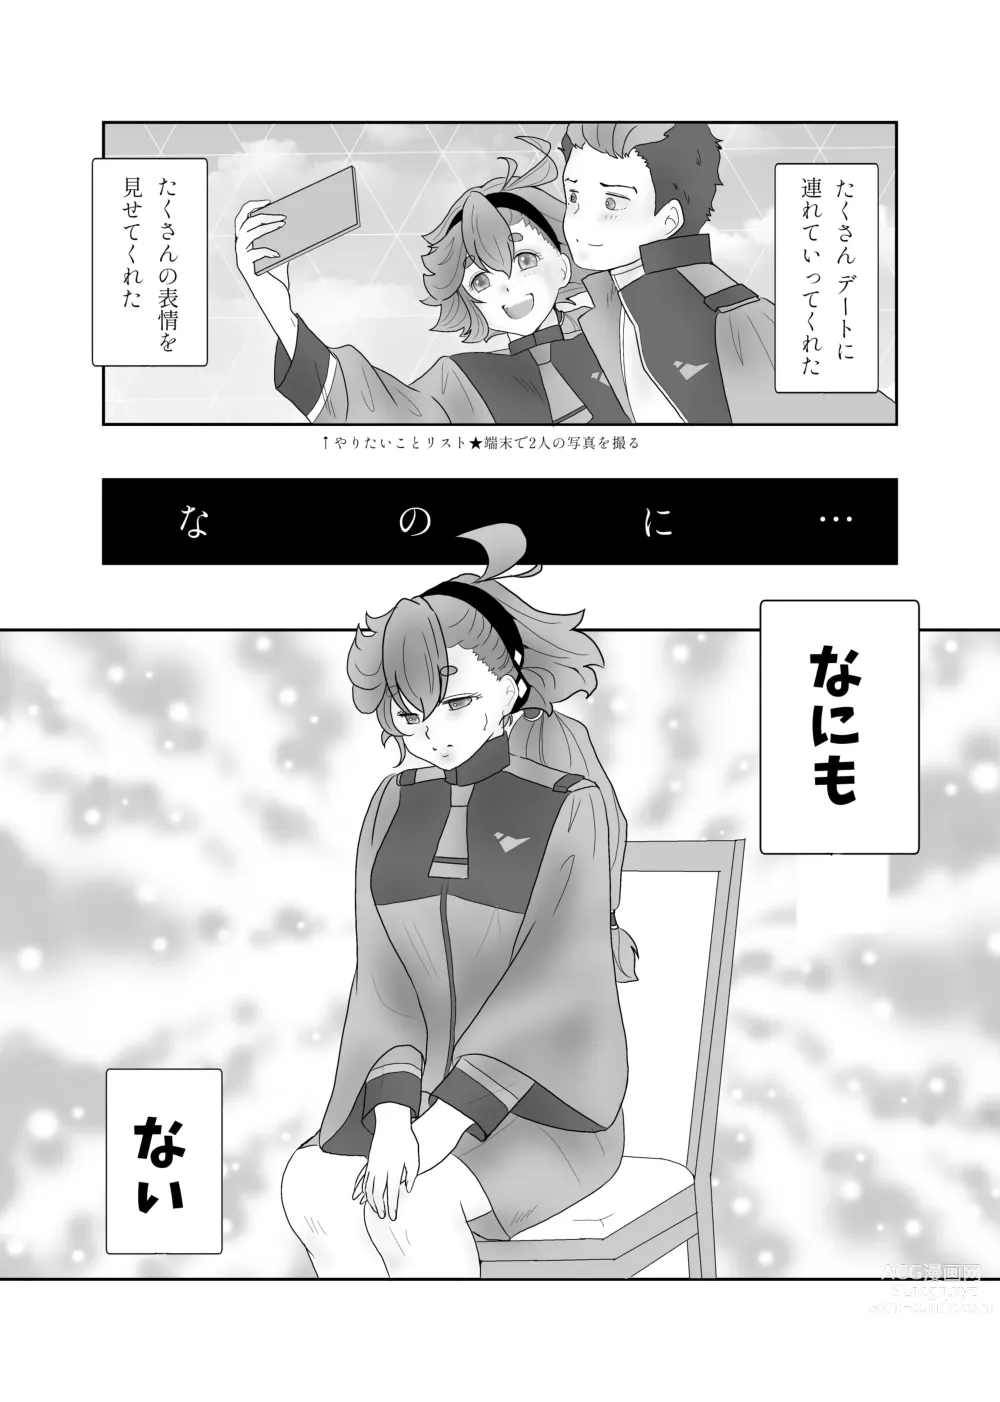 Page 9 of doujinshi Futari dake no ai no katachi